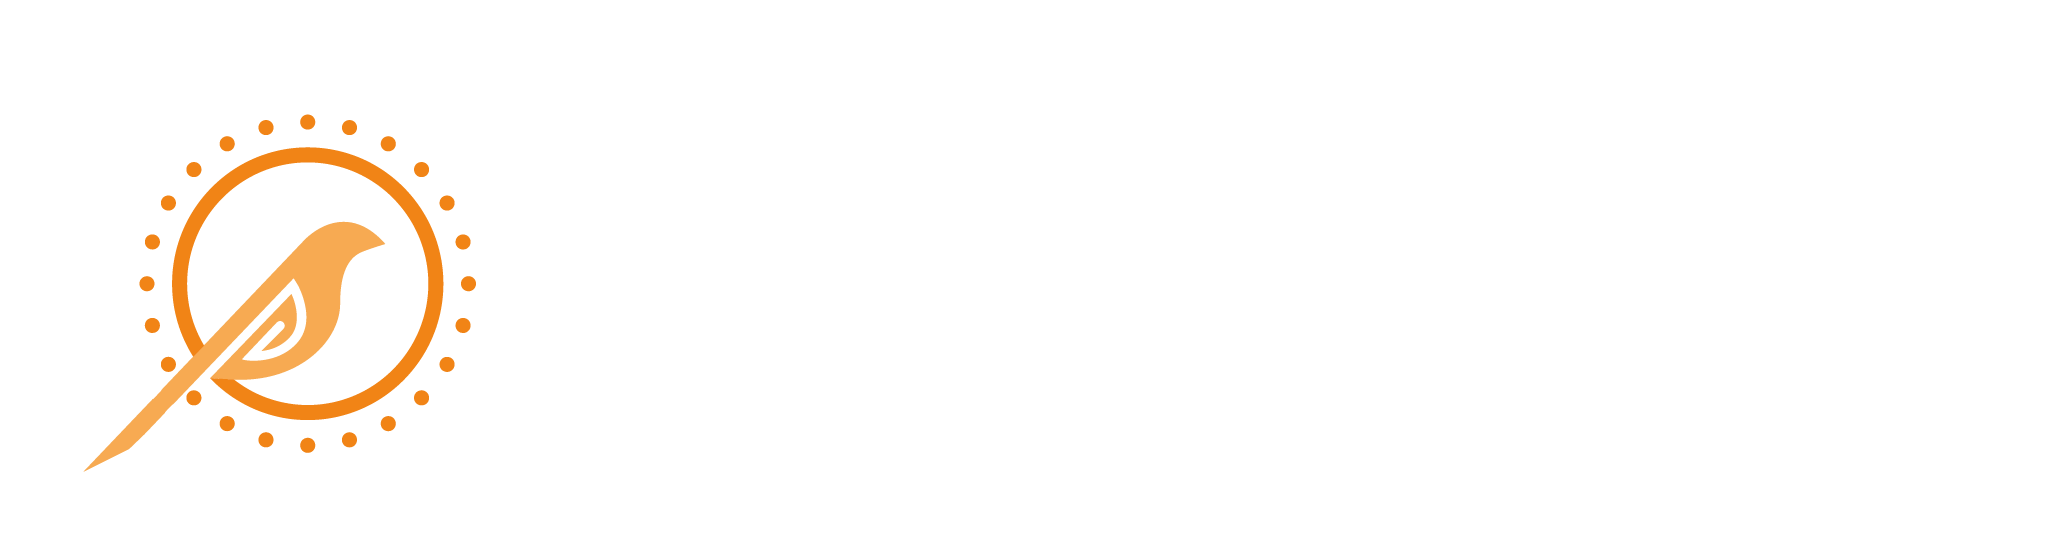 Tax Sparrow Logo